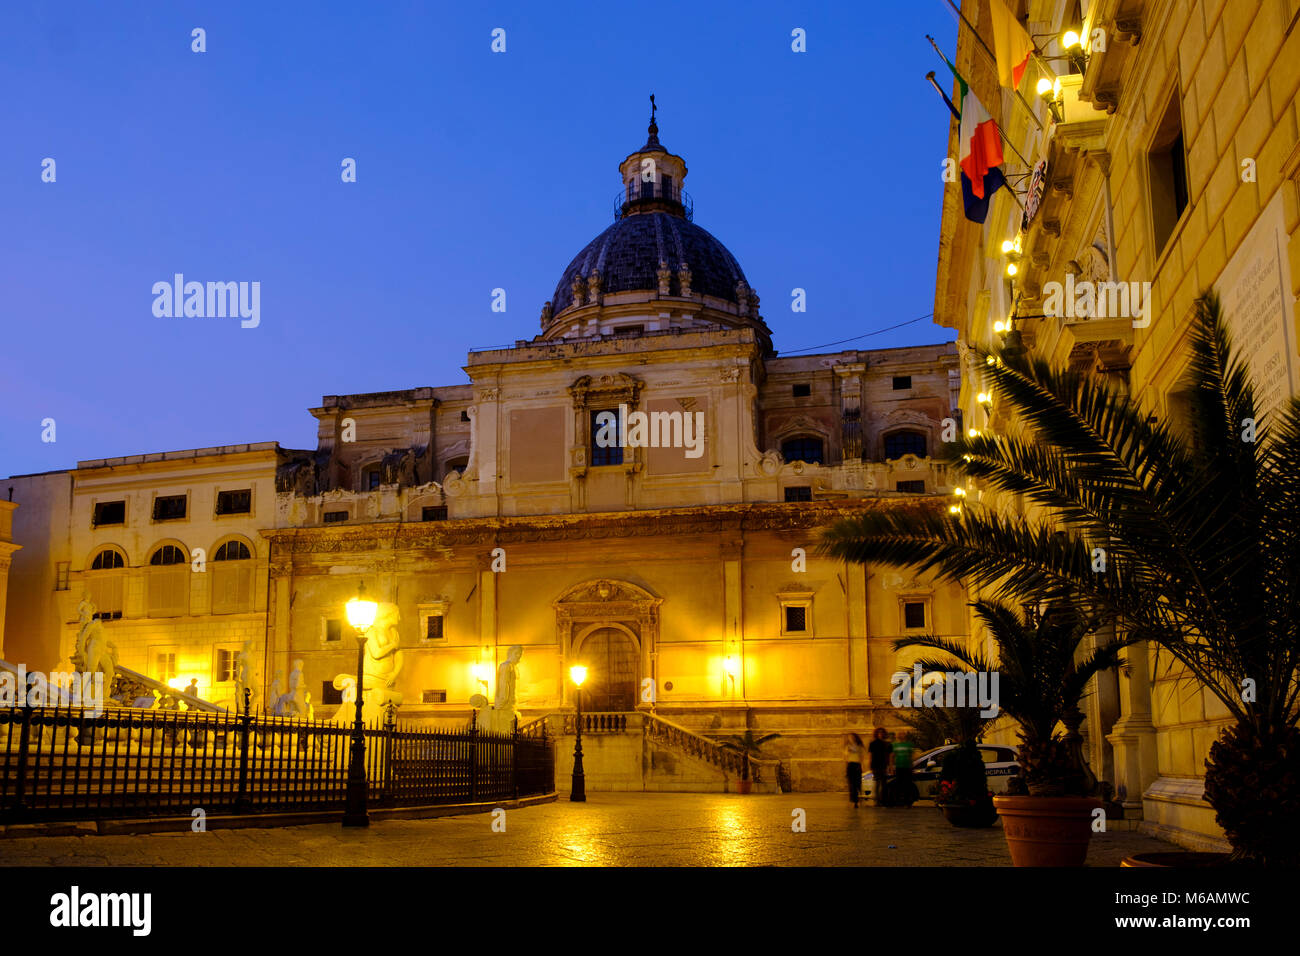 Chiesa Santa Caterina at dusk, Piazza Pretoria, Palermo, Sicily, Italy Stock Photo